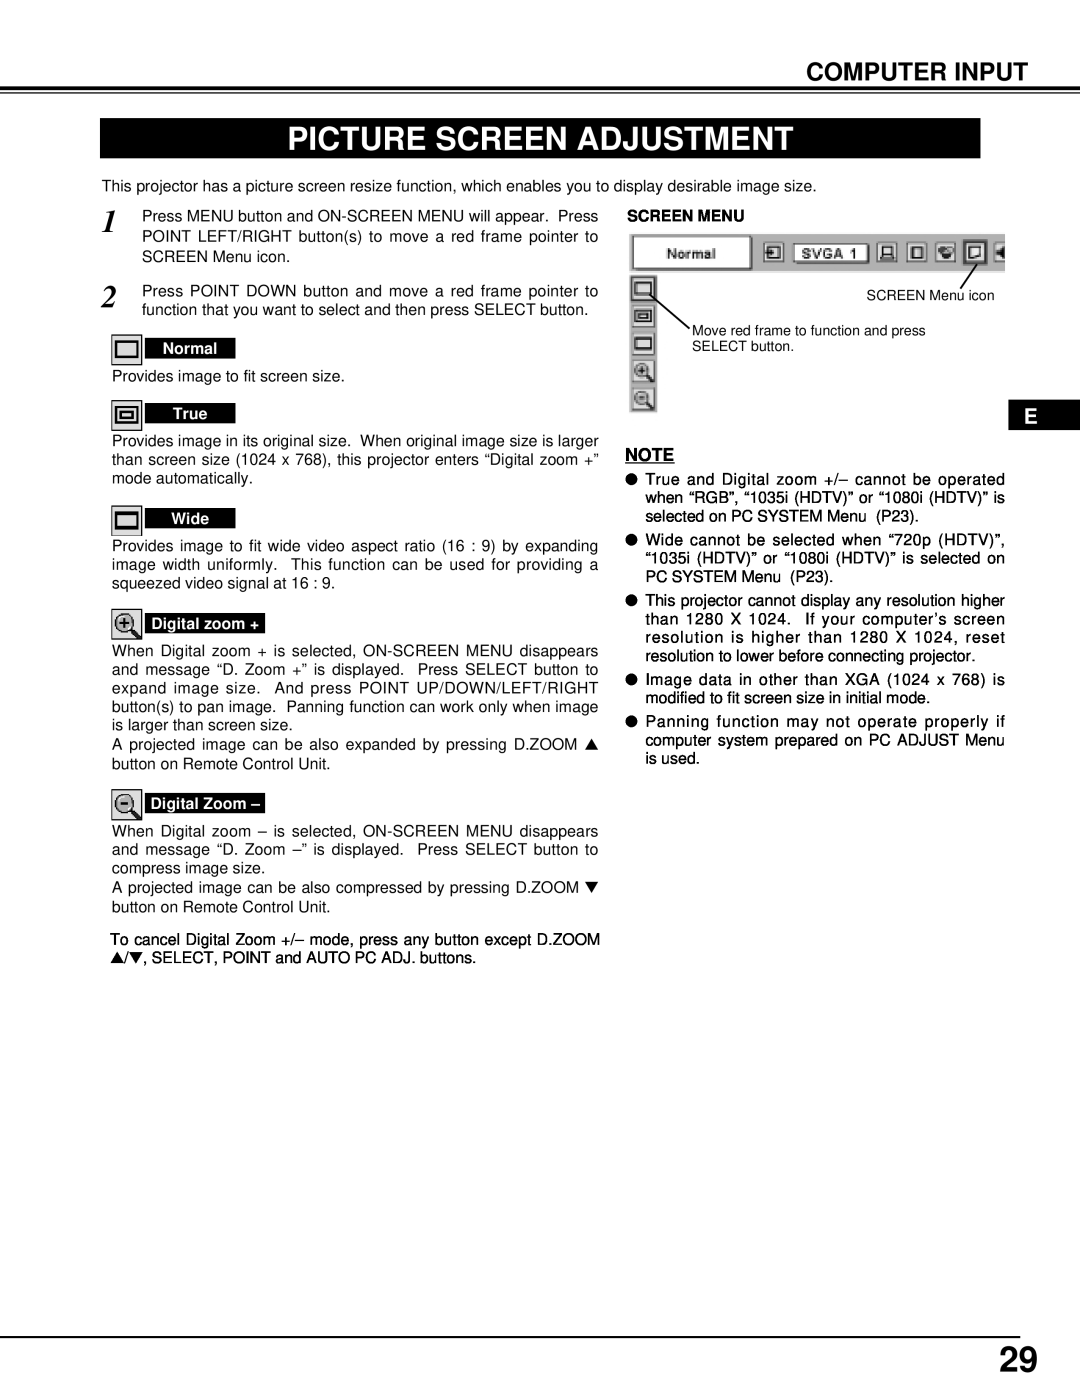 InFocus DP9295 manual Picture Screen Adjustment, Computer Input, Screen Menu 